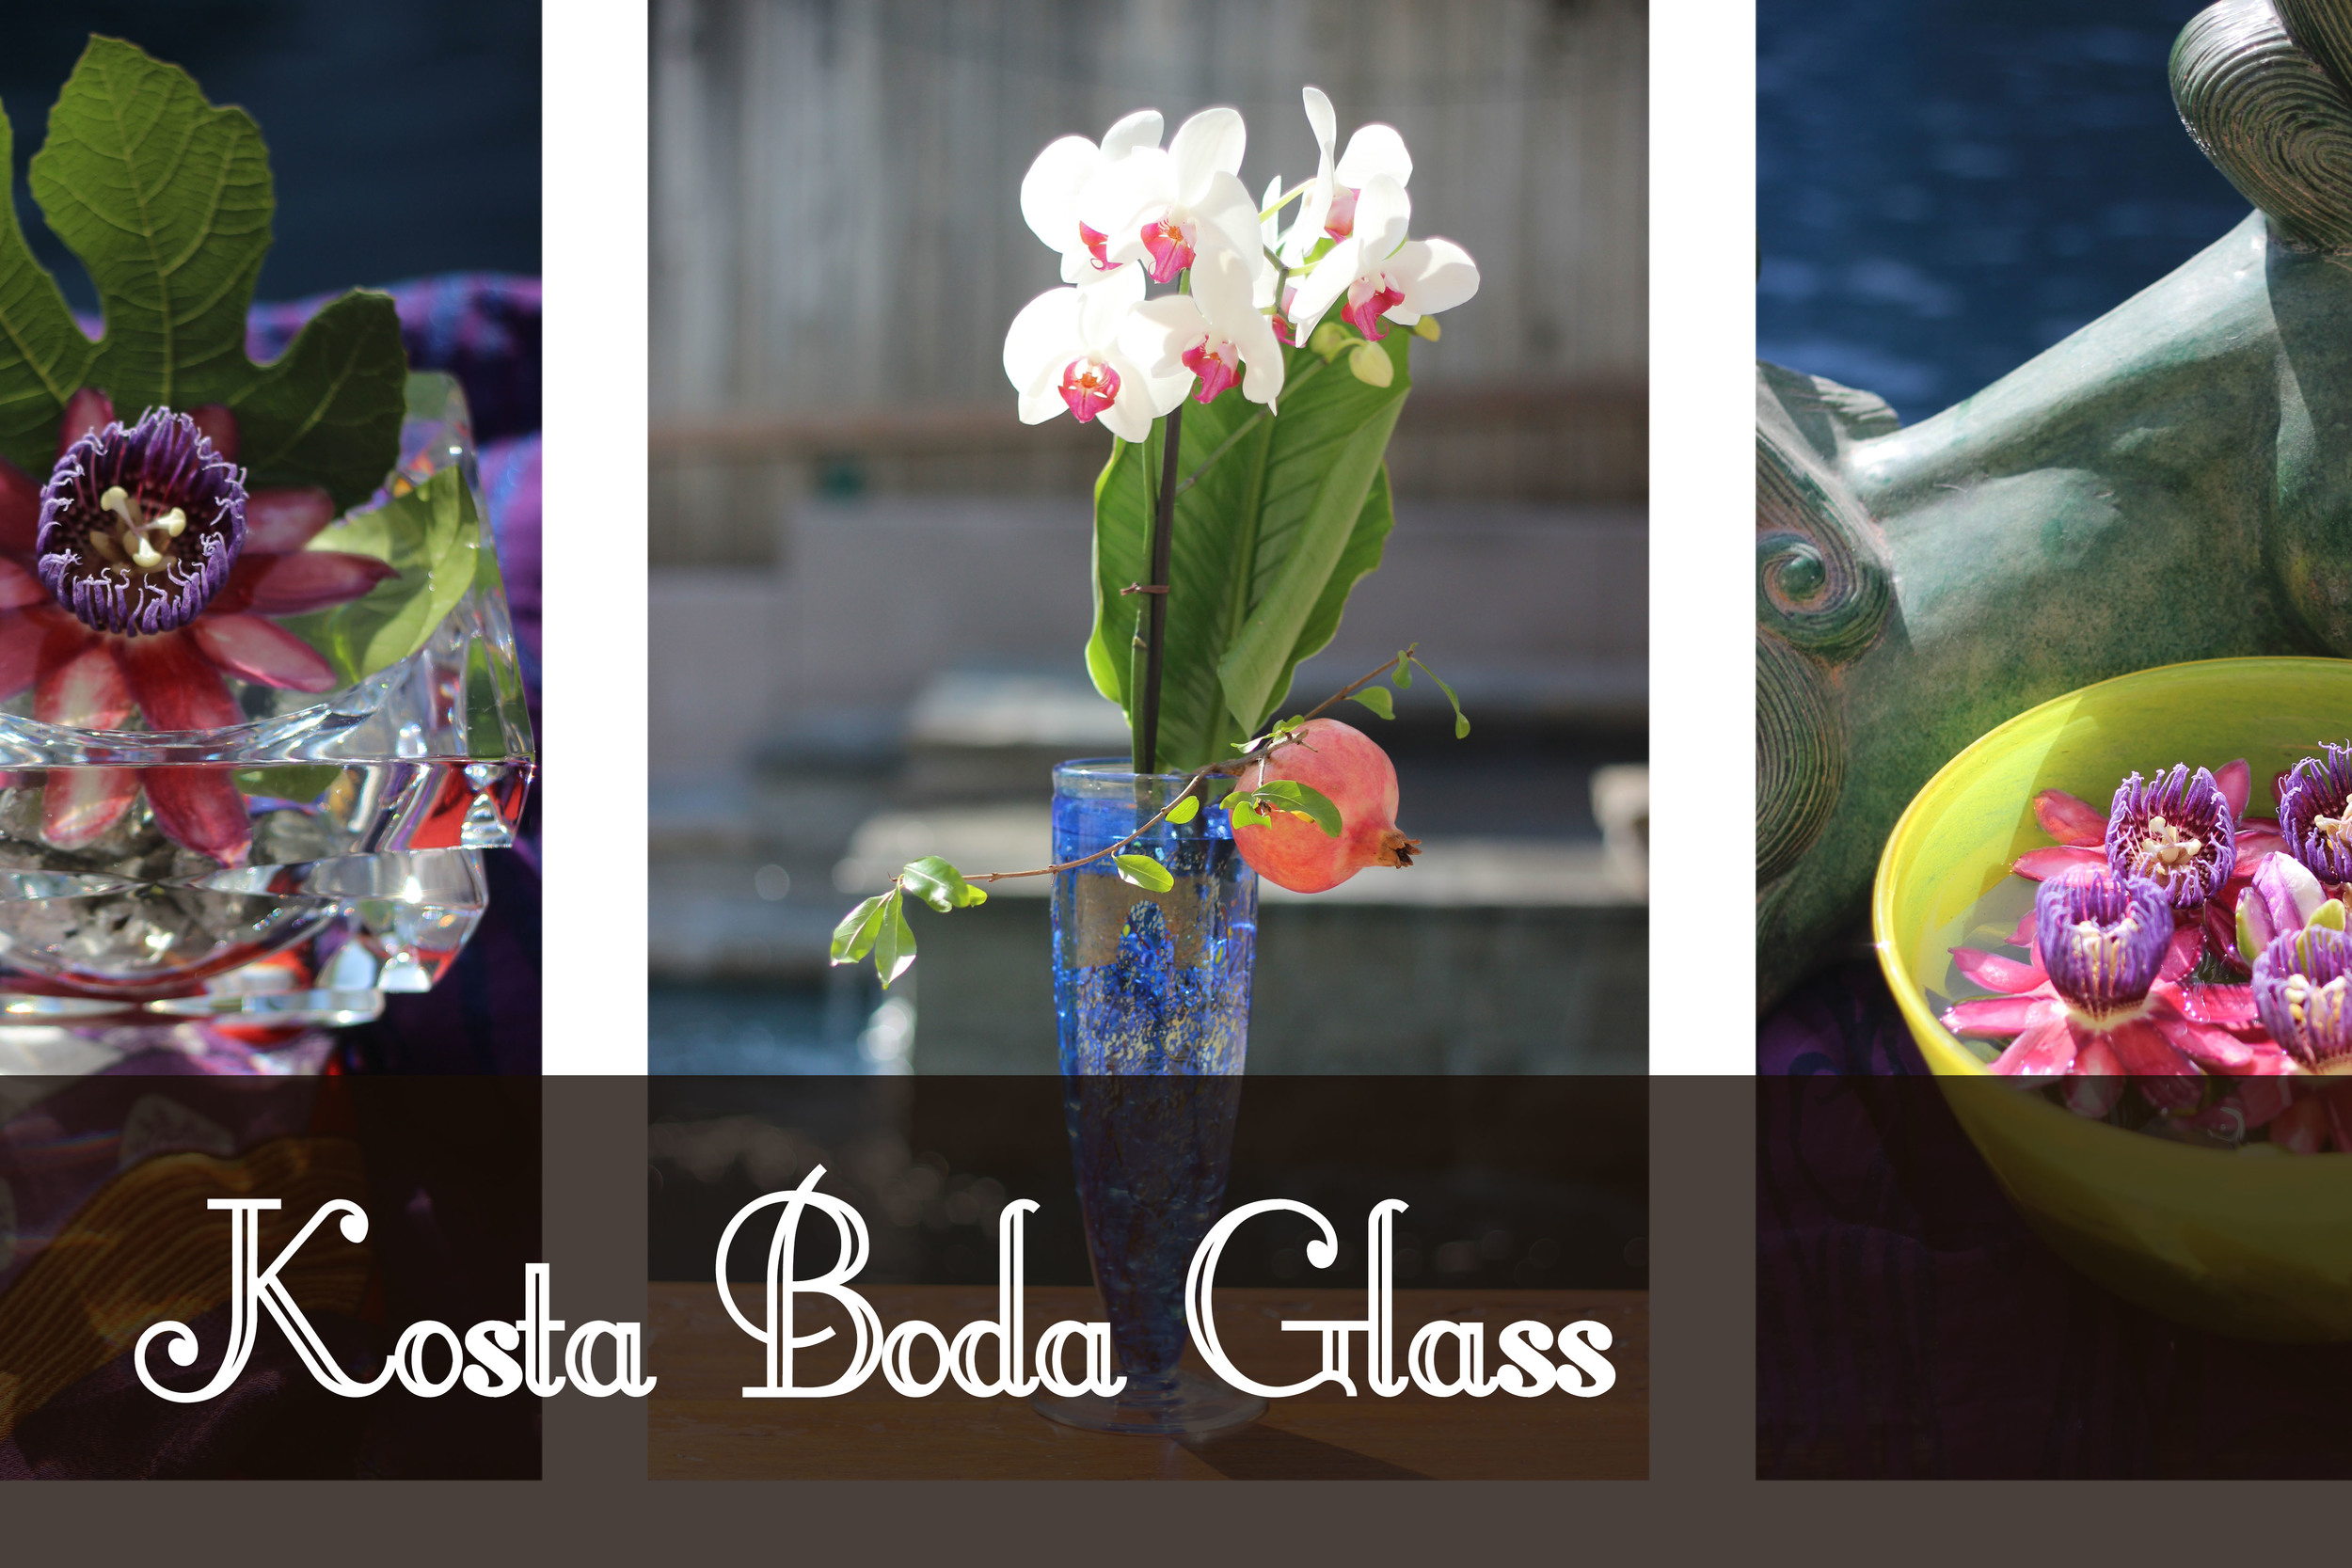 What's Kosta Boda Glass